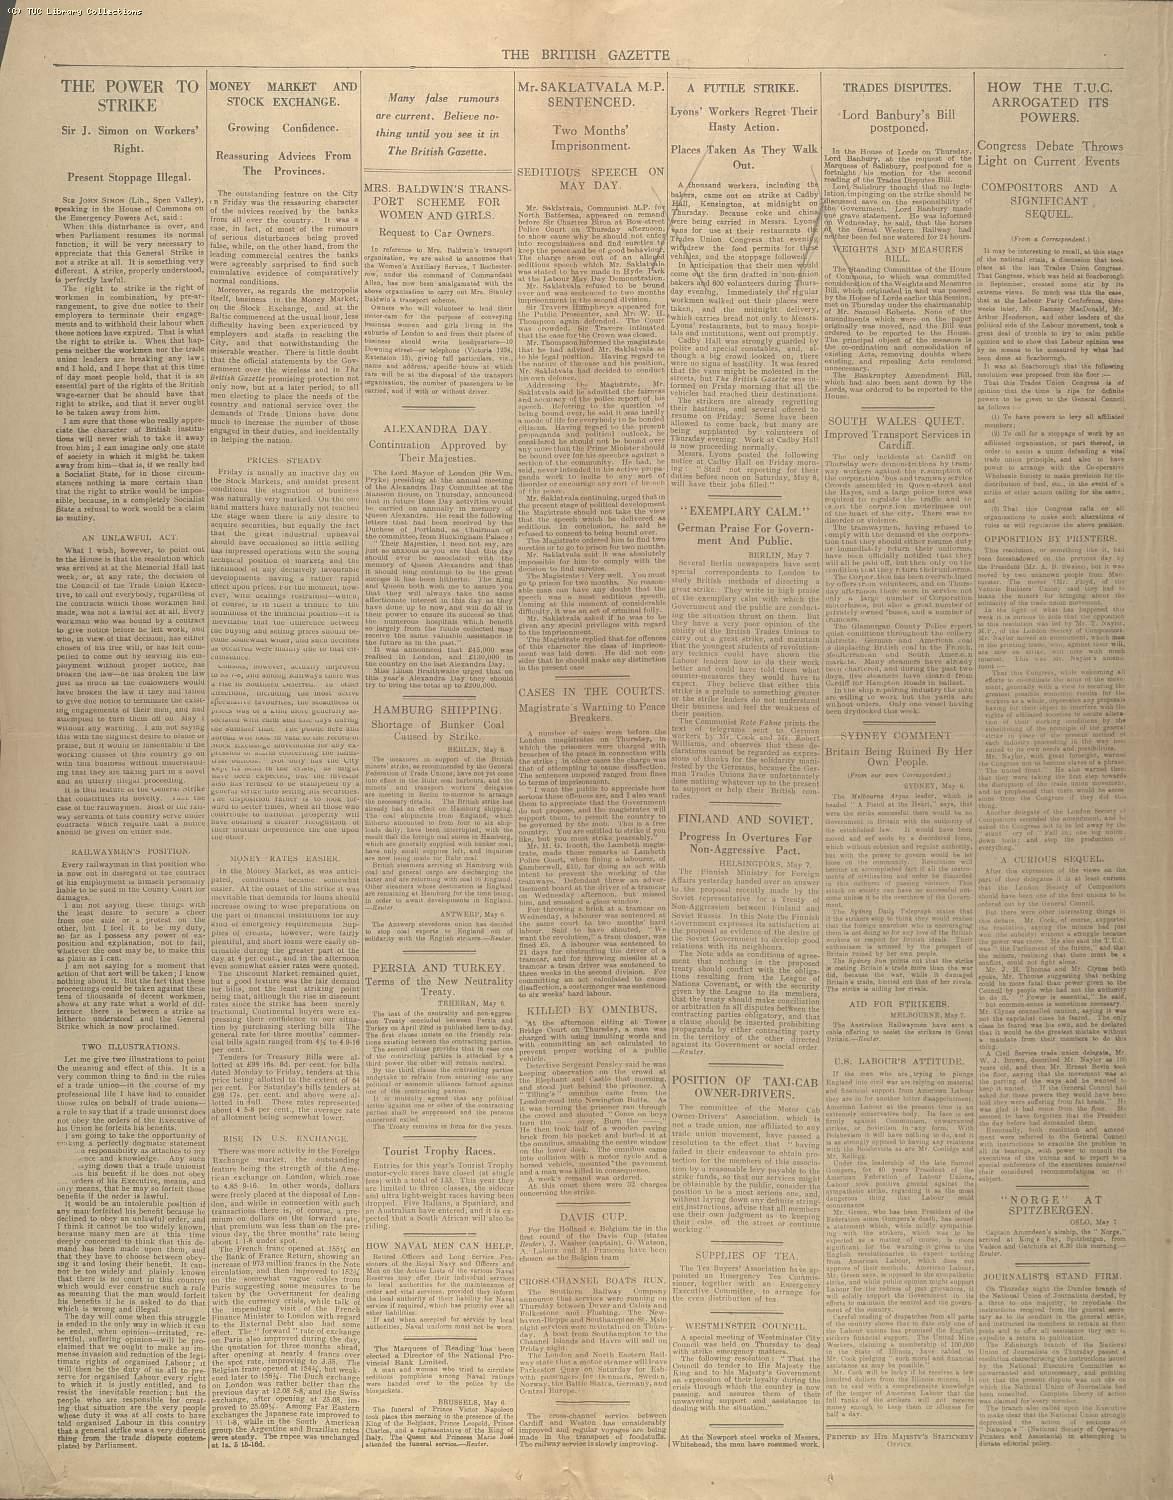 The British Gazette, 8 May 1926